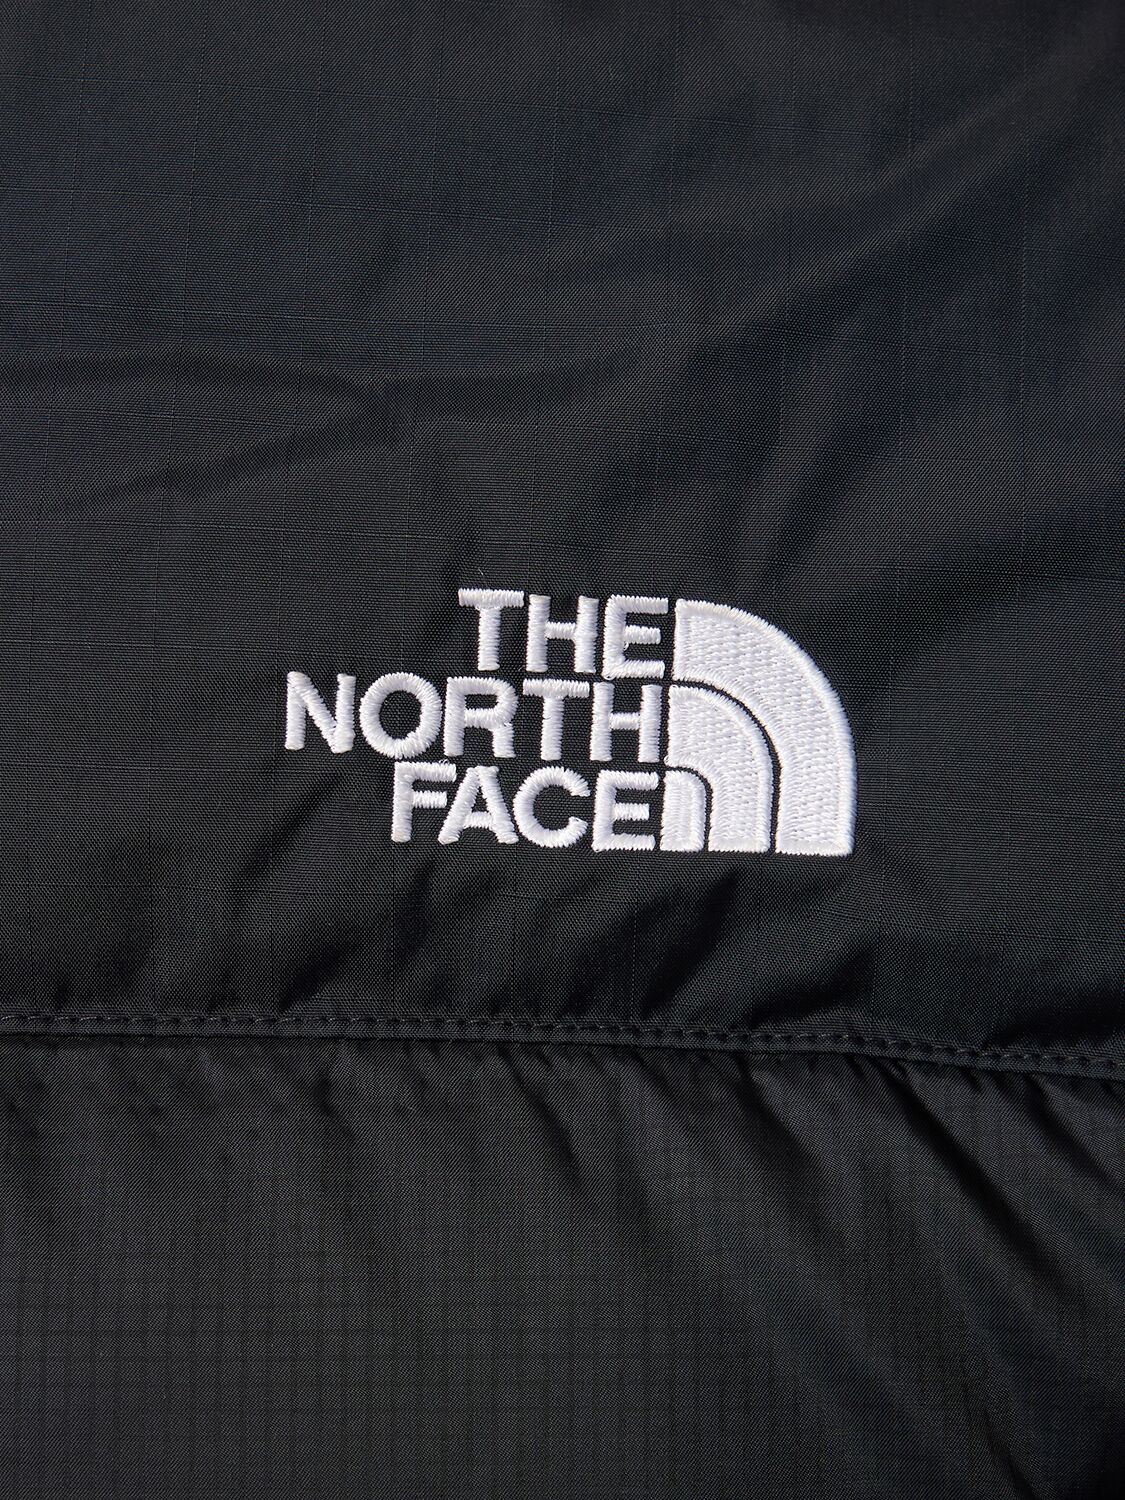 The North Face Doudoune à Capuche Homme - Diablo - TNF Black/TNF